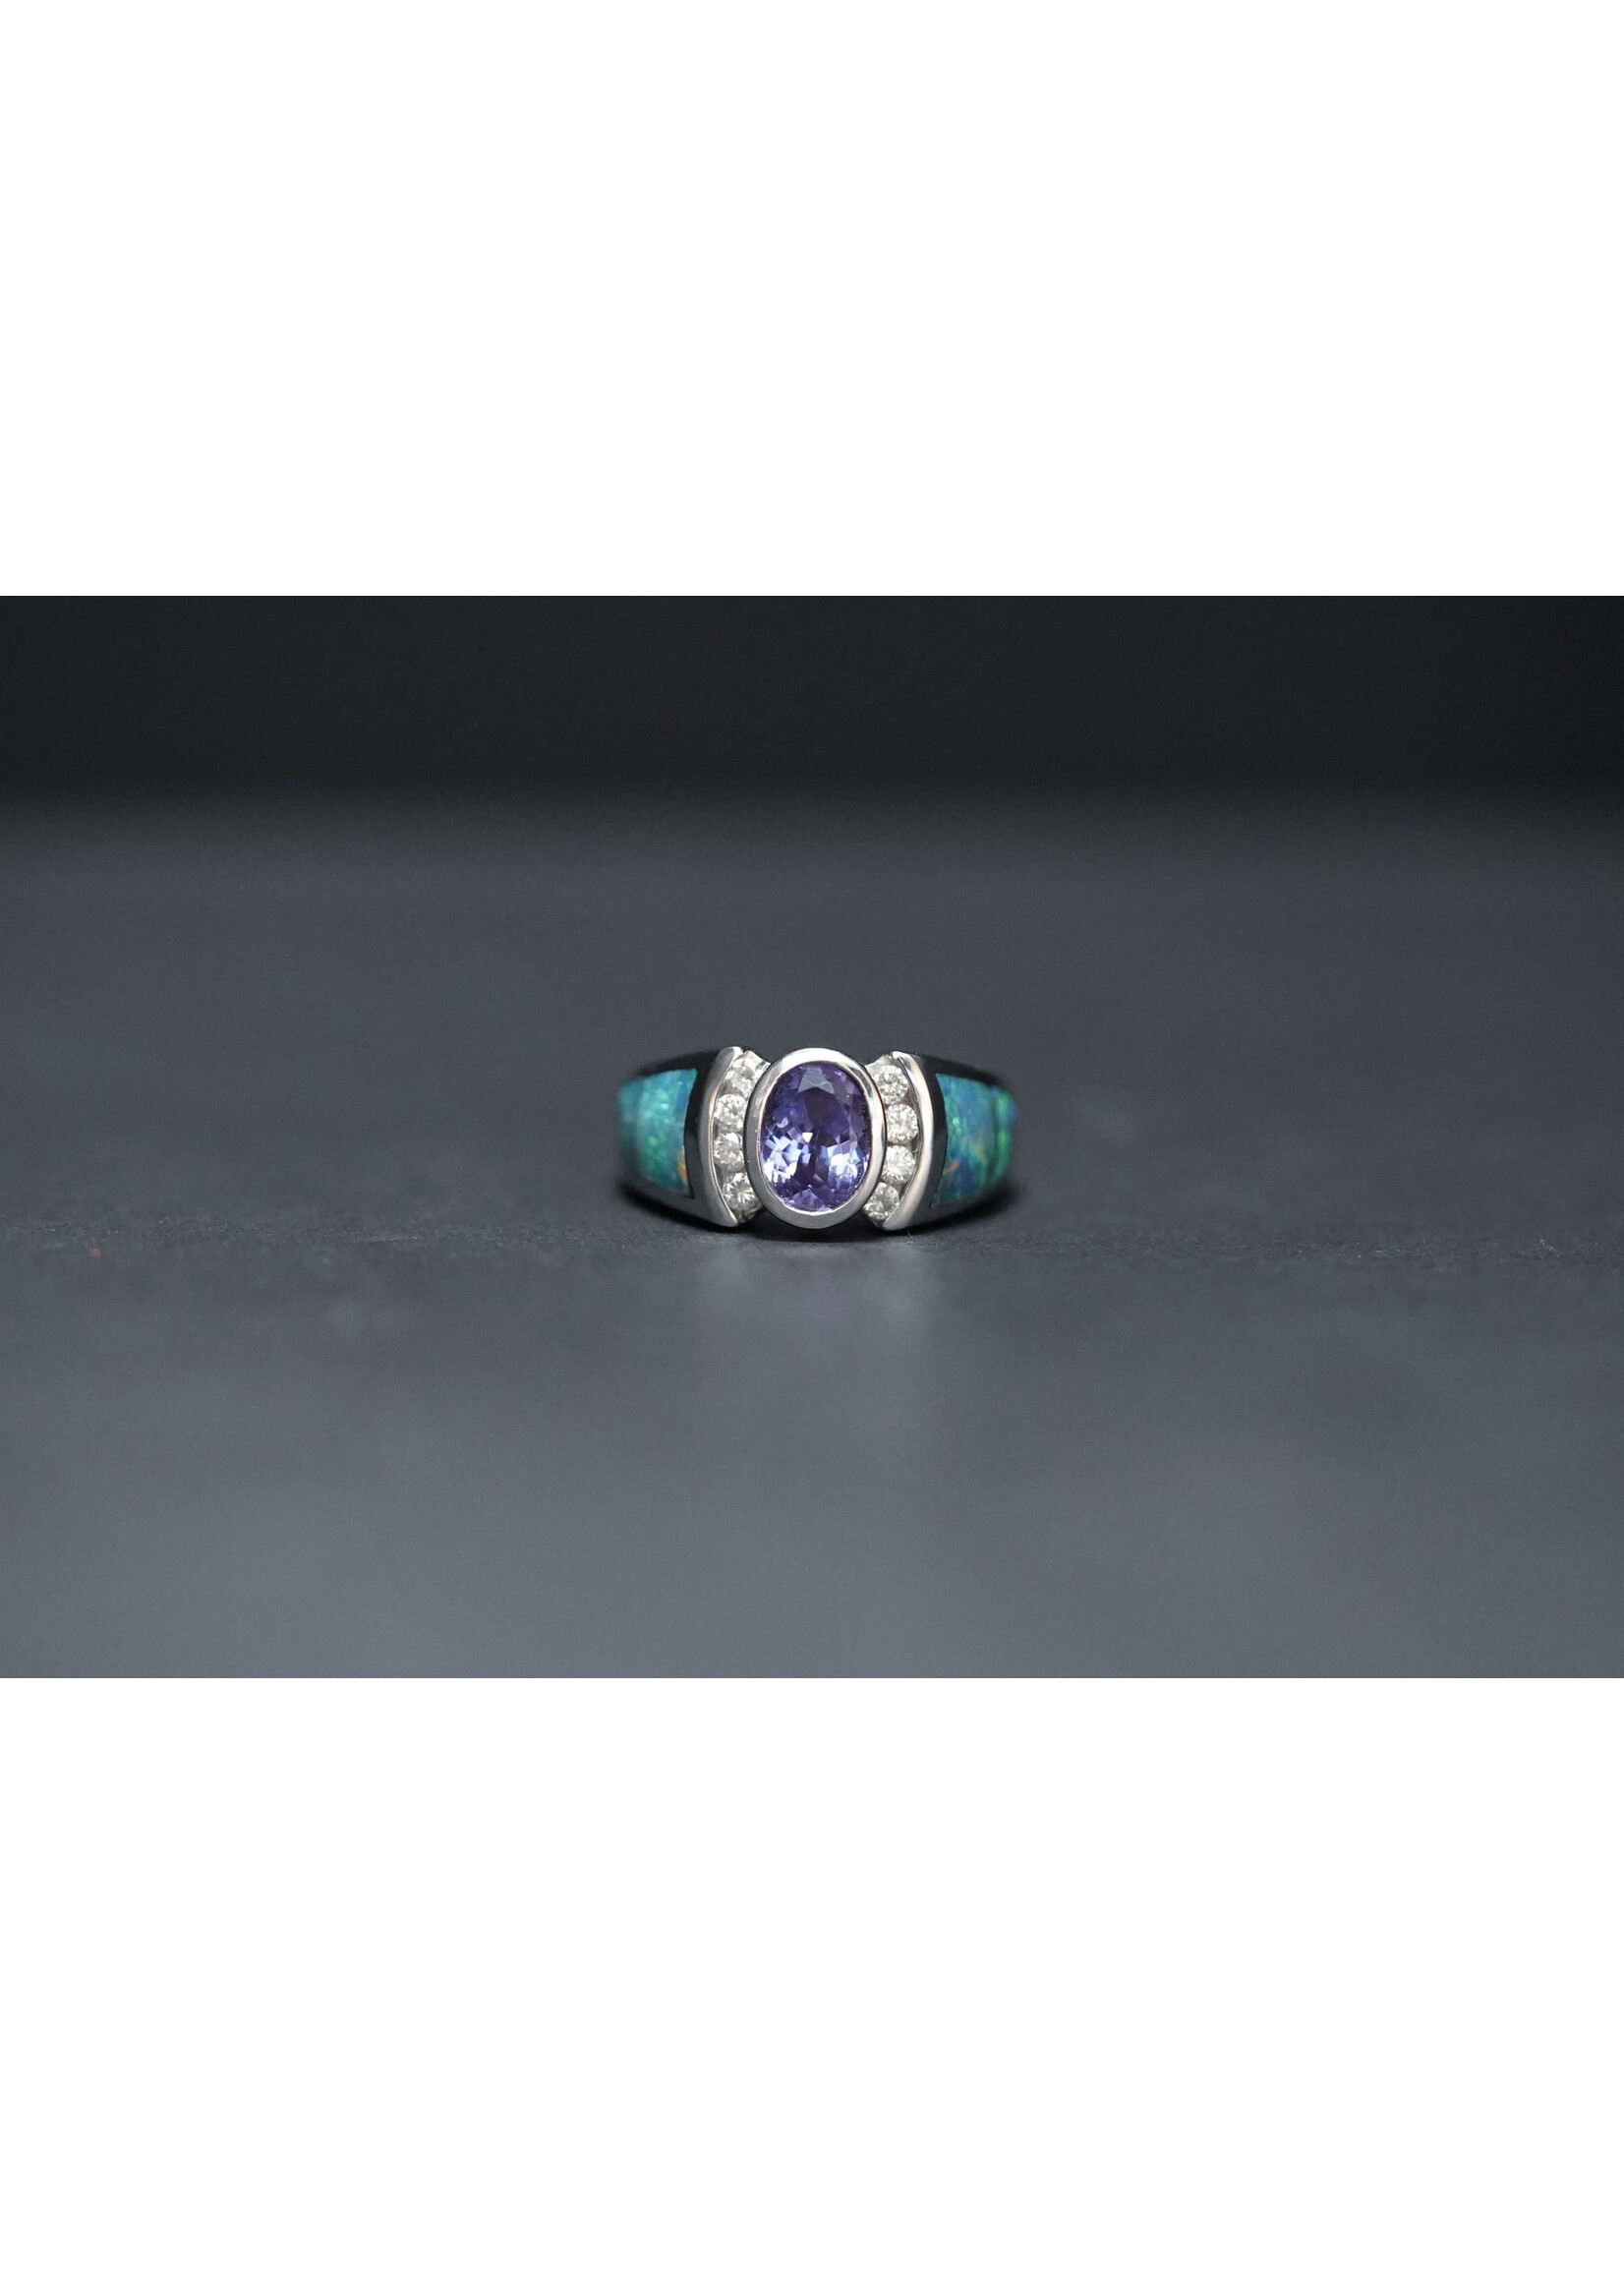 14KW 6.85g 1.40ctw (1.15ctr) Tanzanite, Opal & Diamond Fashion Ring (size 5)